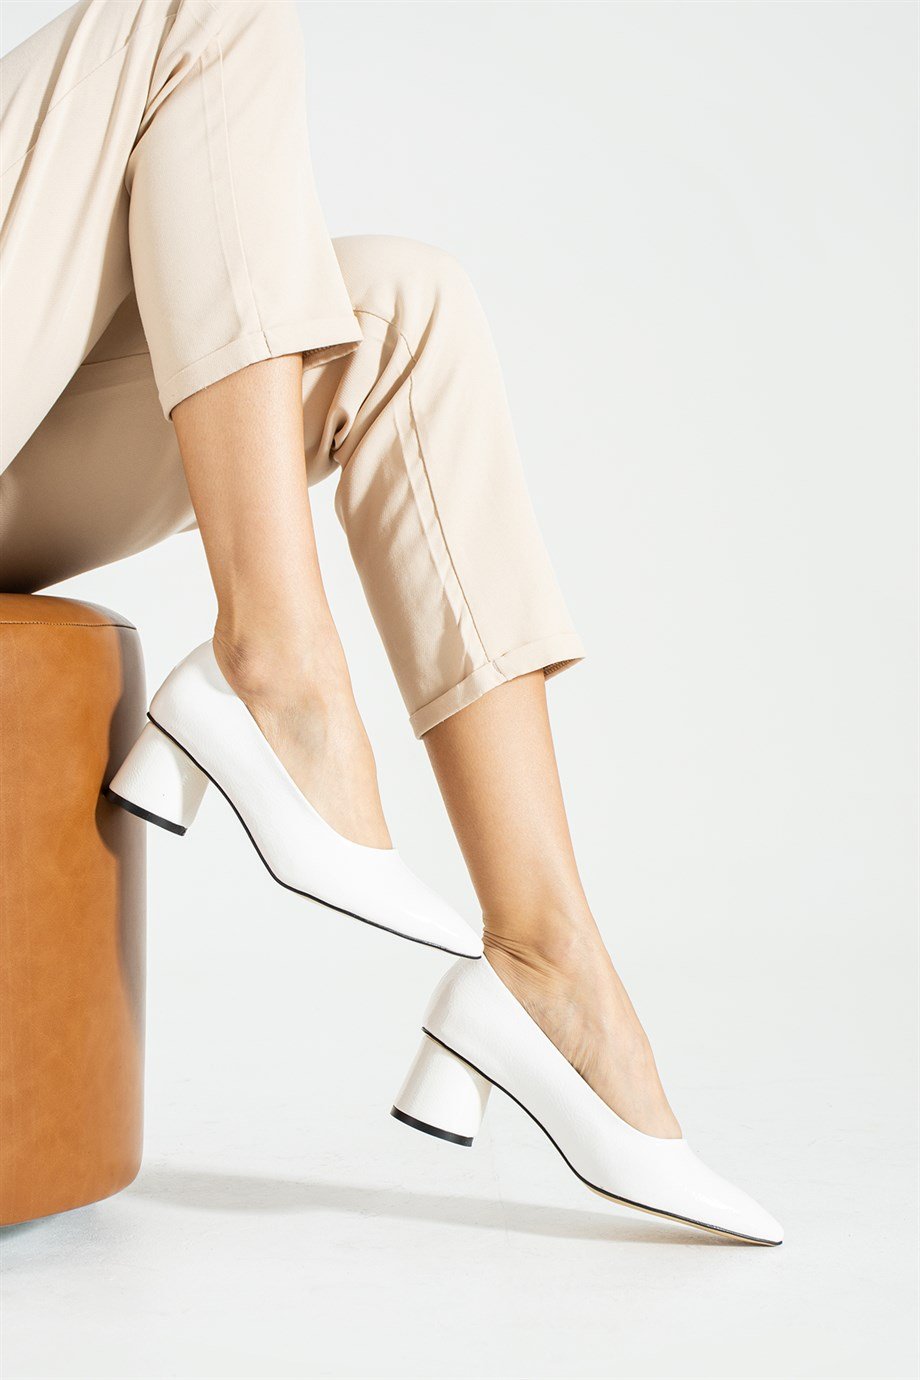 Pazzyonez ROUND Beyaz Kırık Rugan Kadın Topuklu Ayakkabı